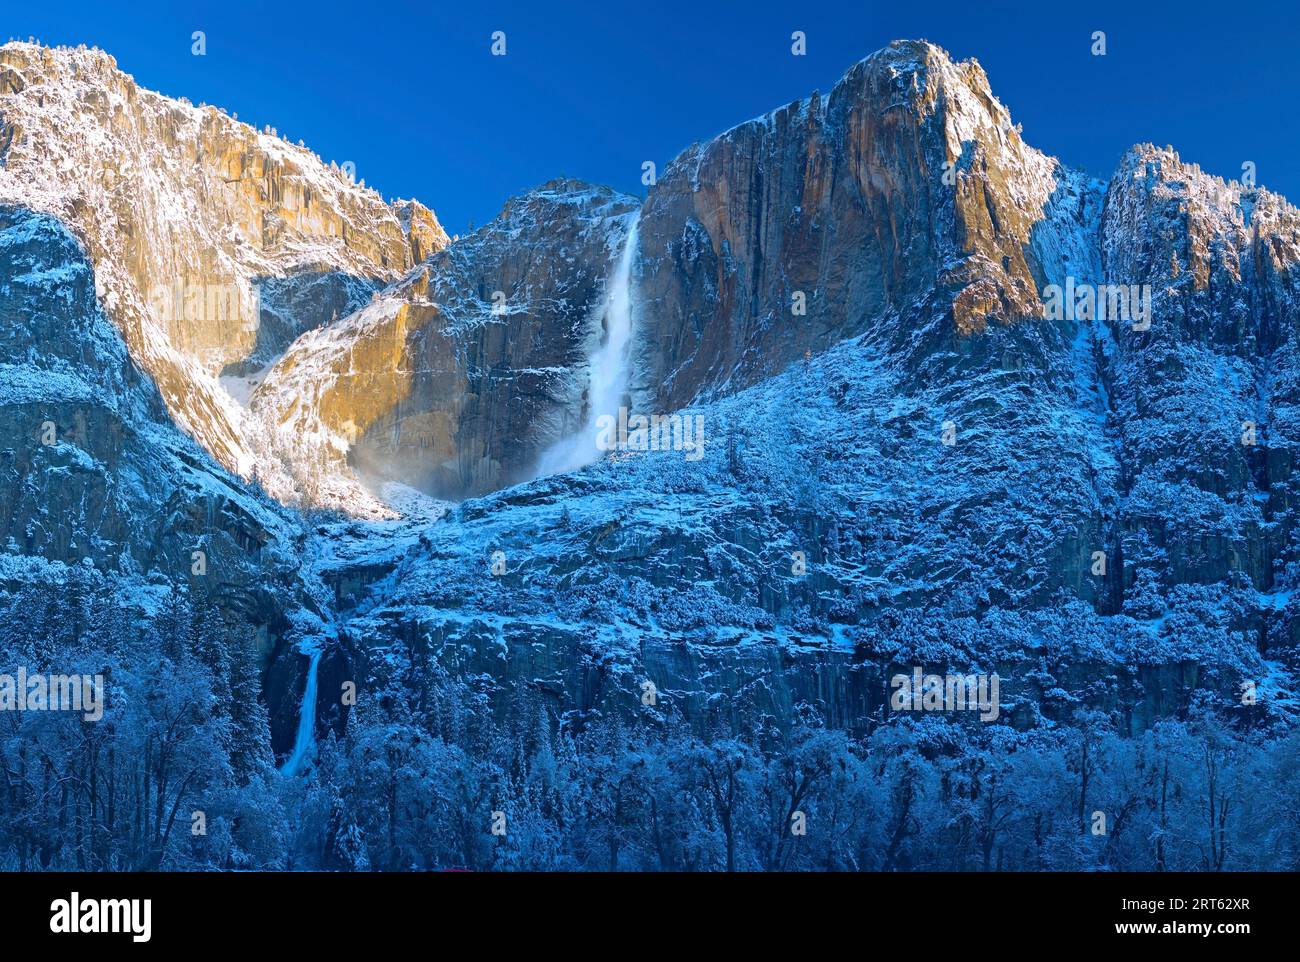 Die oberen und unteren Yosemite Falls wurden im späten Winter nach einem starken Schneefall im Yosemite National Park, Kalifornien, USA, im März 2008 gefangen genommen. Stockfoto